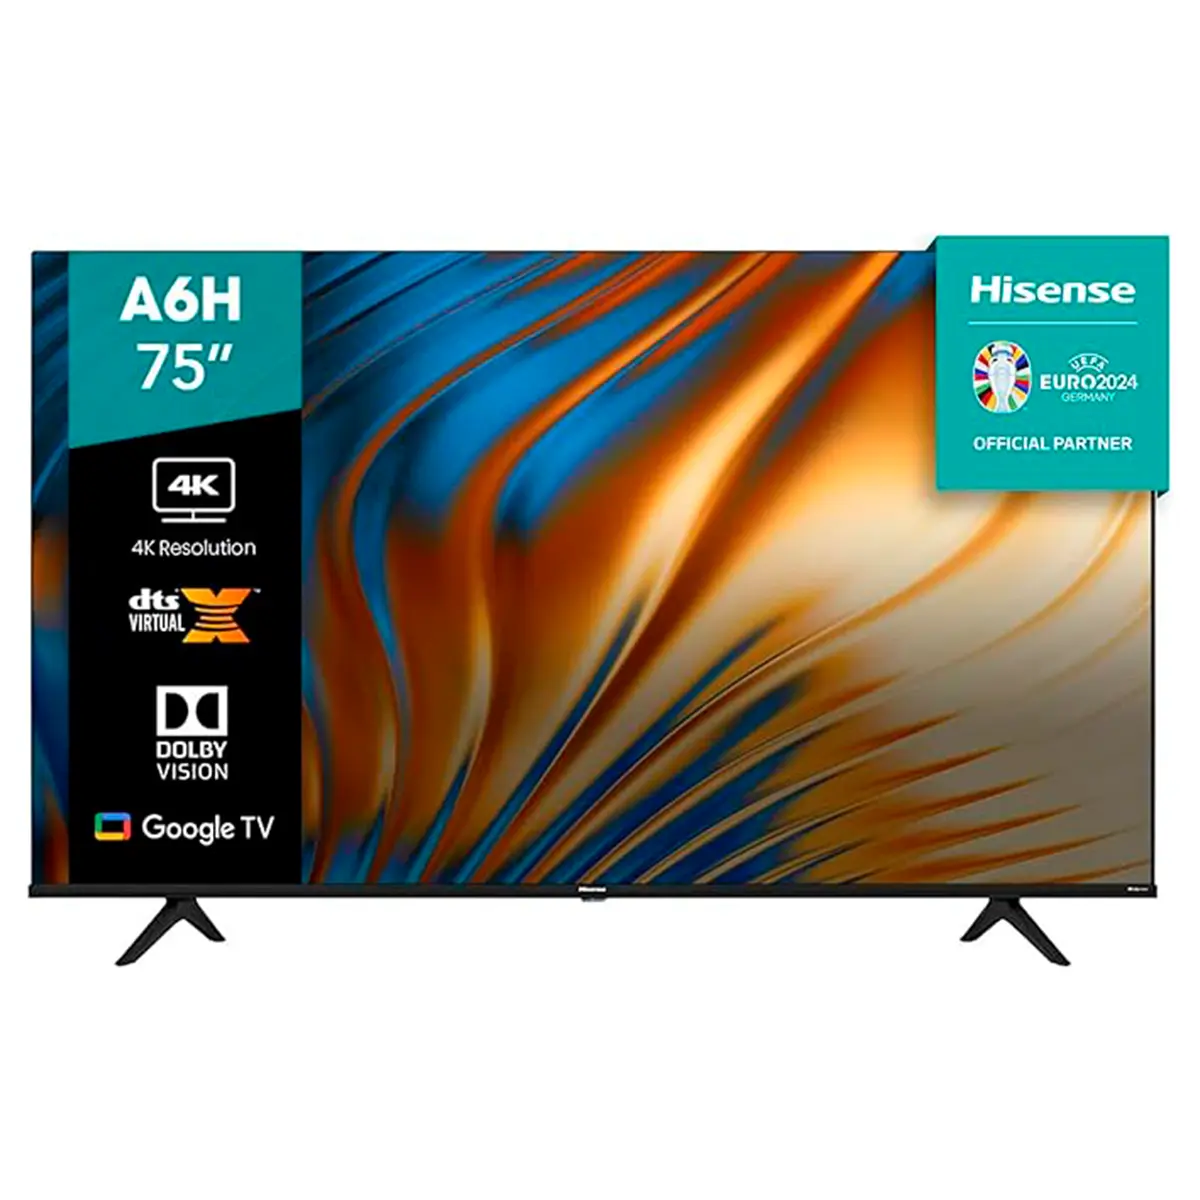 TV Hisense Pantalla 75" 4K Smart TV LED 75A6H Google TV